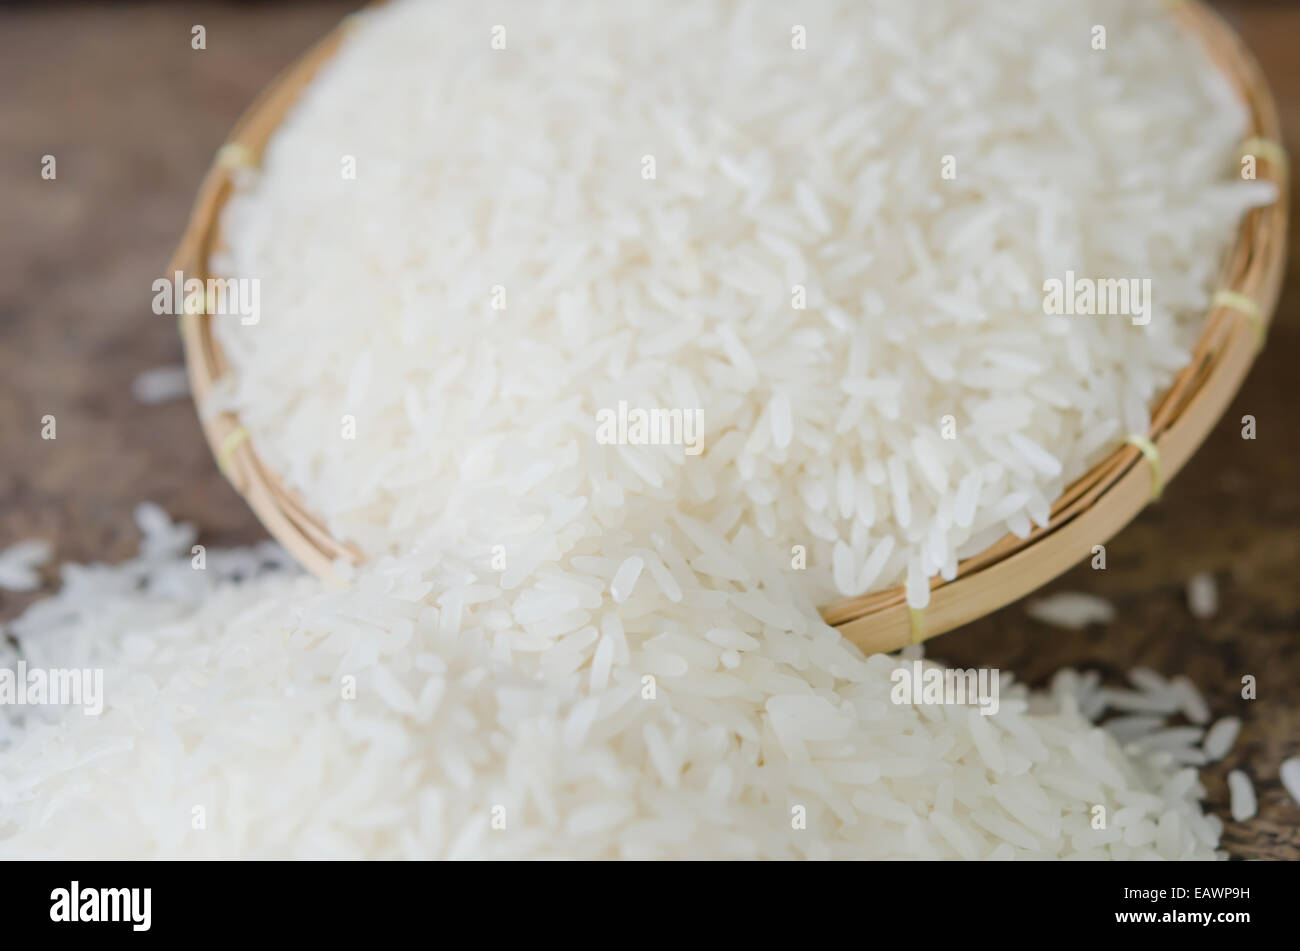 Les grains de riz blanc sur la table en bois Banque D'Images